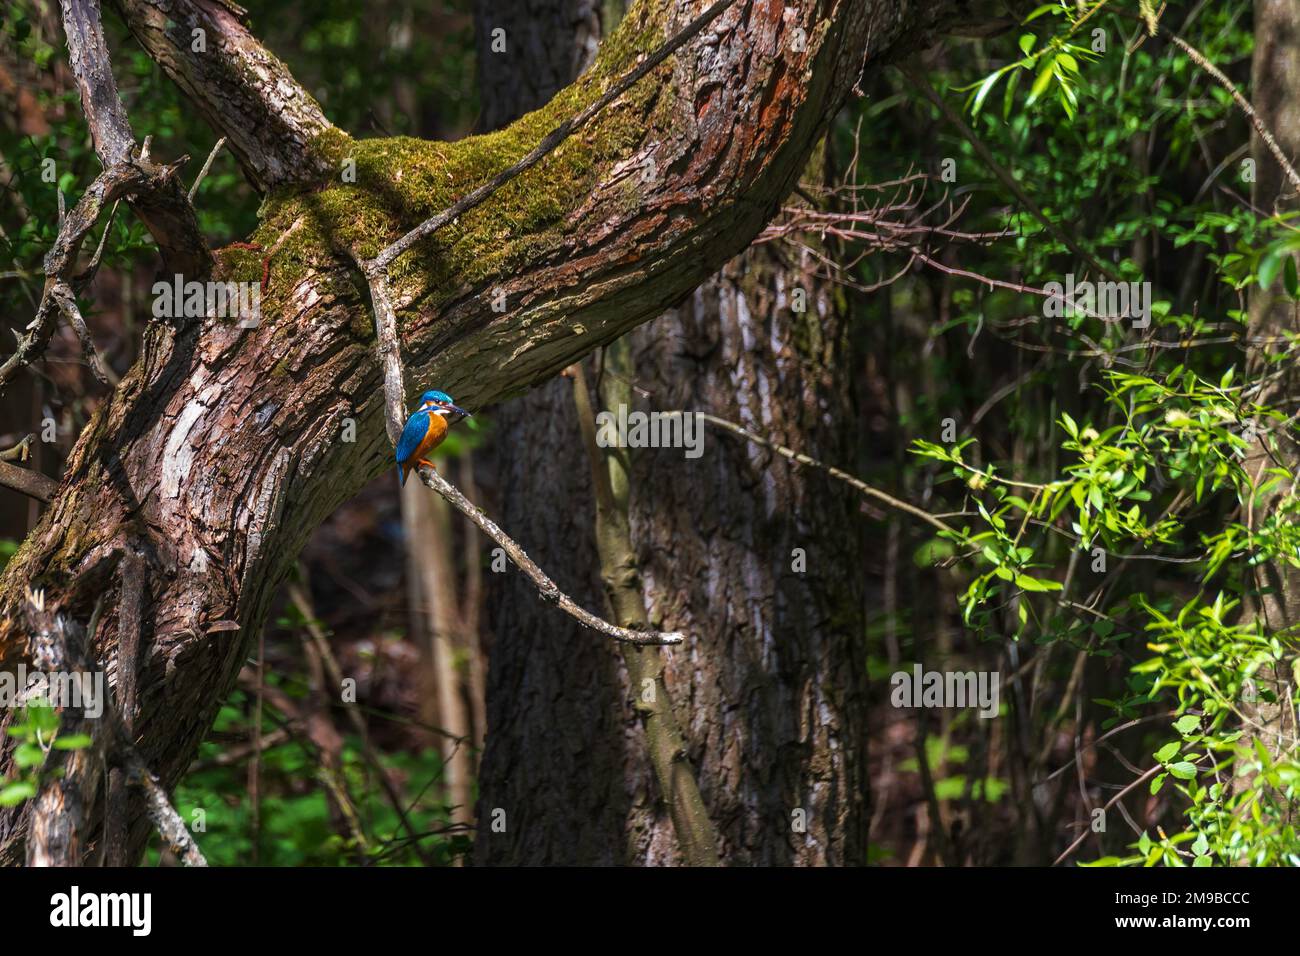 Schöner farbenfroher Vogel Eisvögel, der auf einem Ast sitzt. Seine Federfarbe ist blau und orange. Wildes Foto Stockfoto